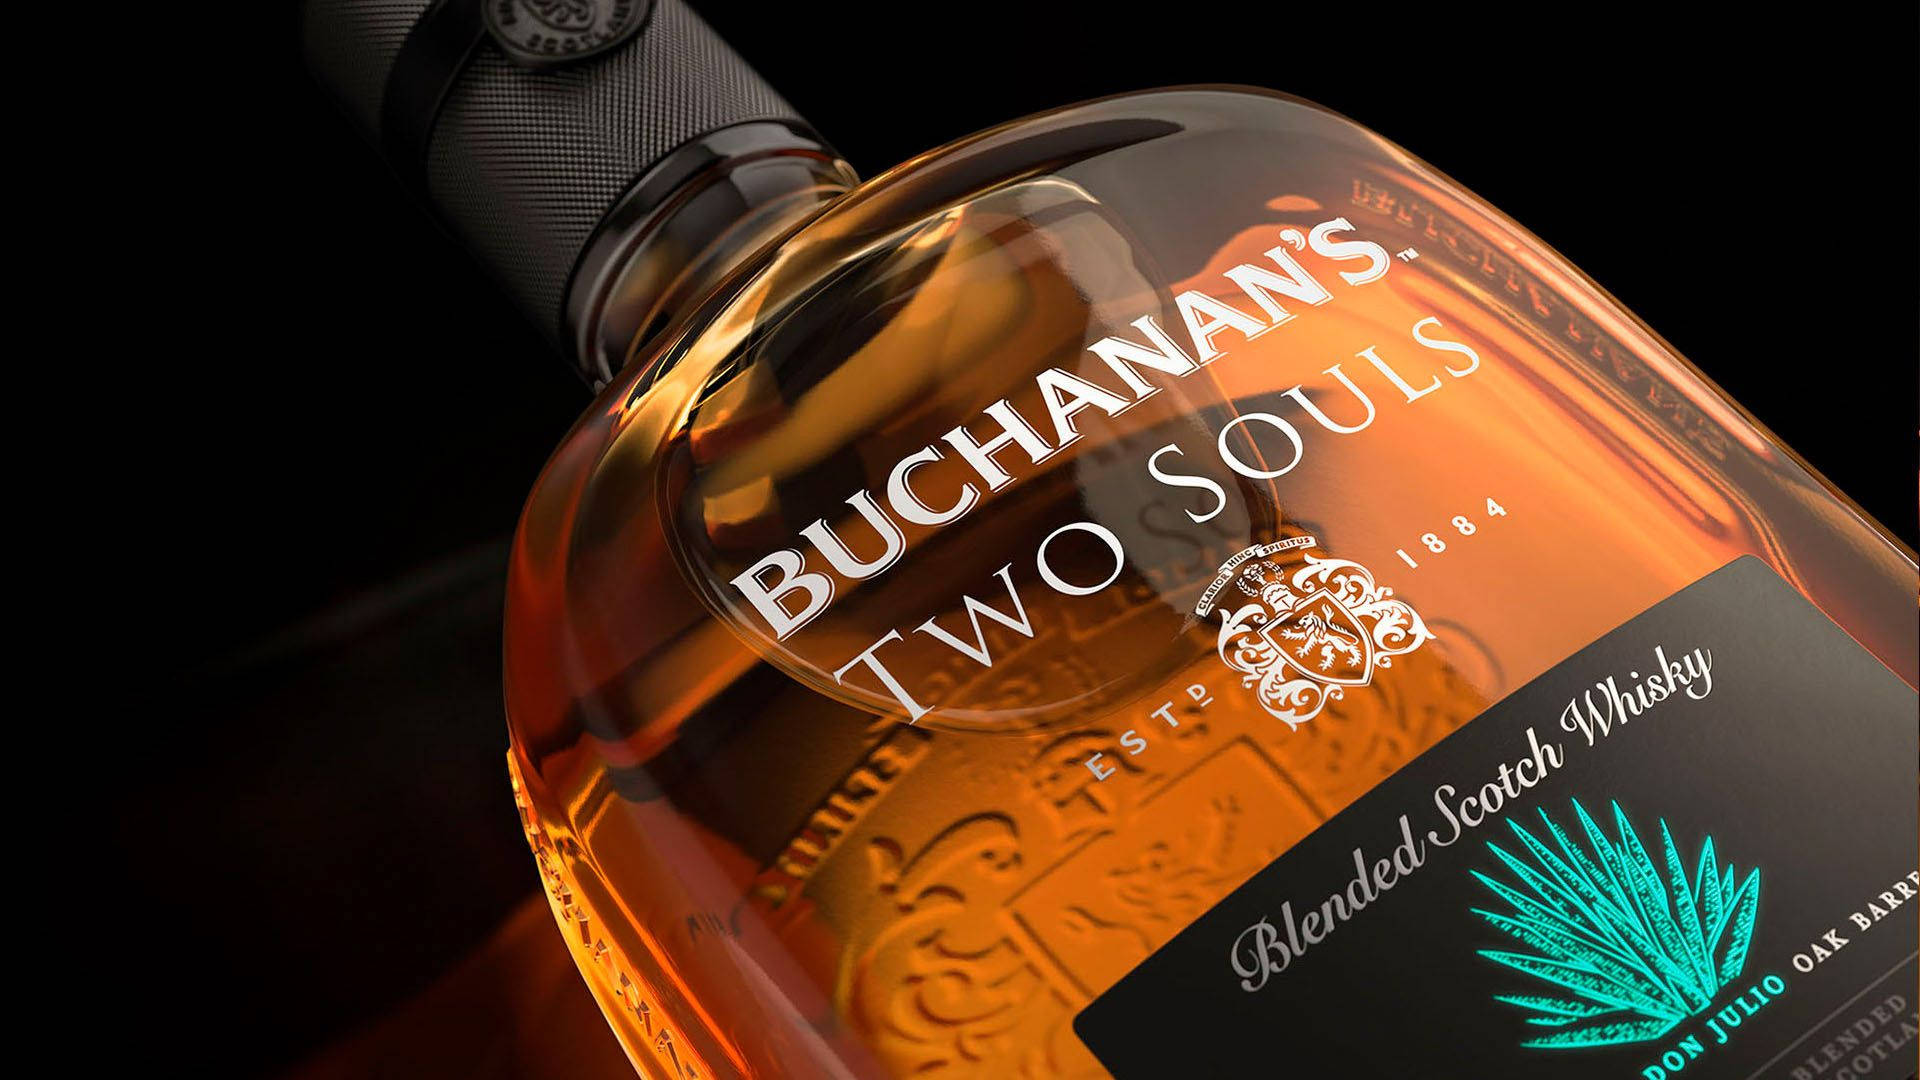 Two Souls Blend Buchanan's Whiskey Wallpaper